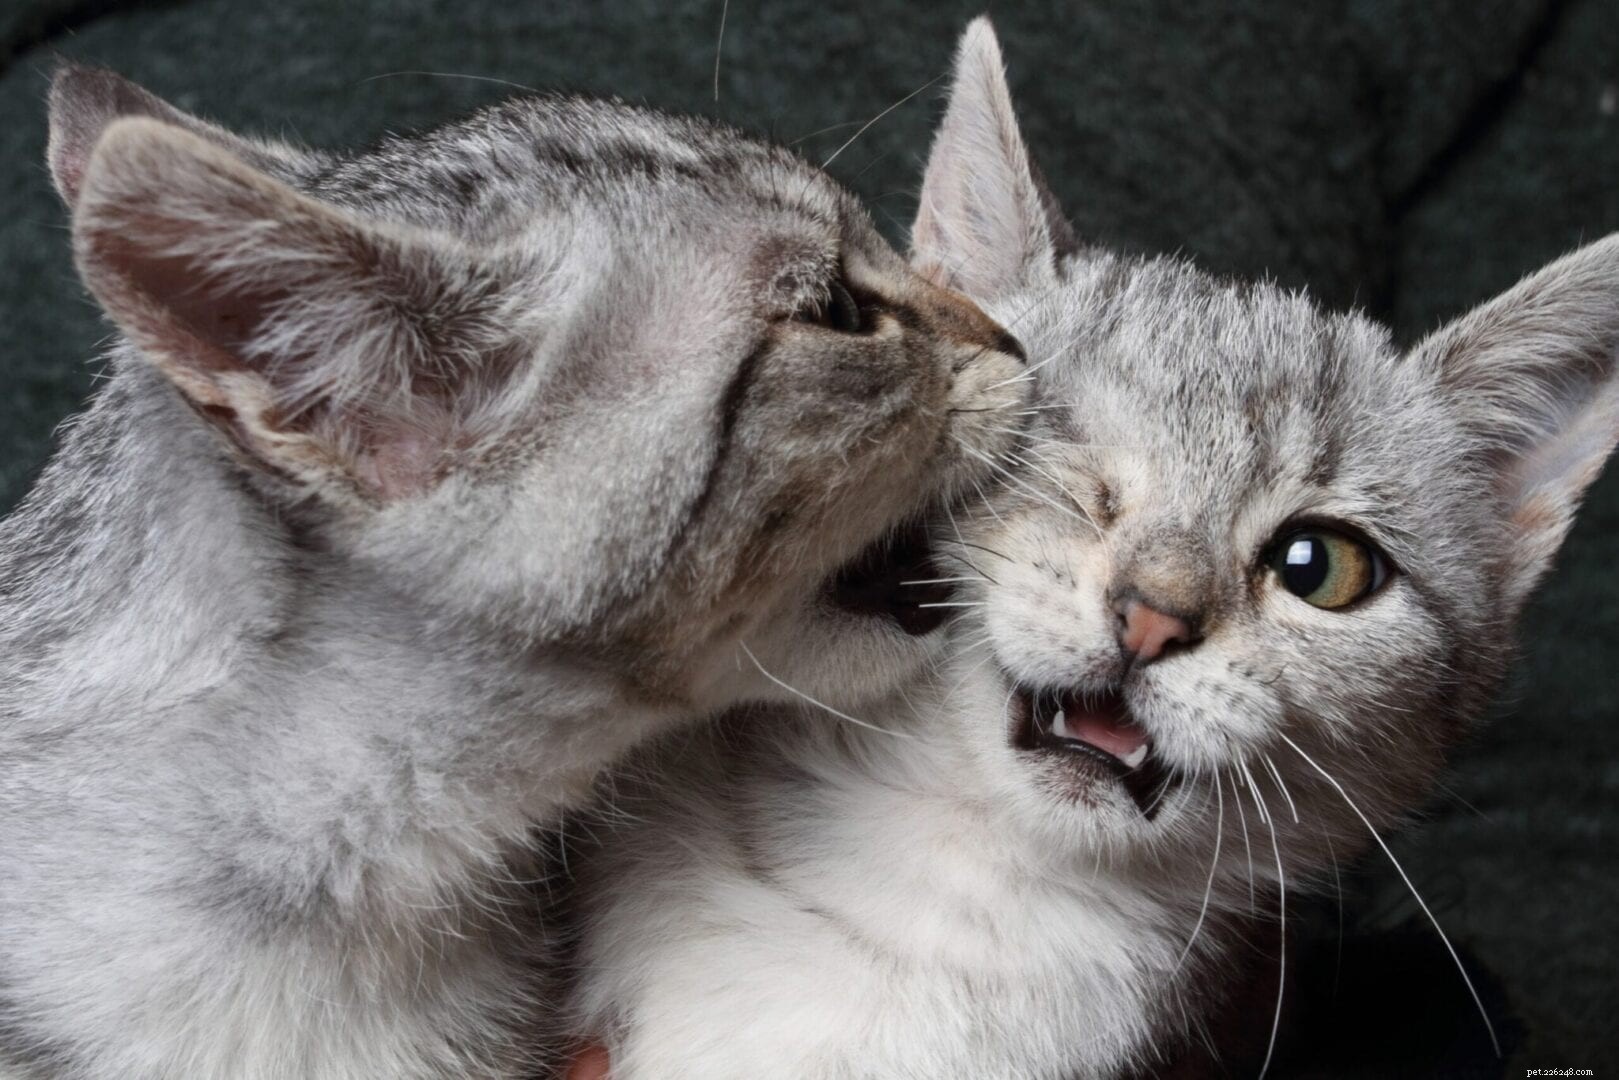 Come determinare se i gatti stanno giocando o se stanno litigando